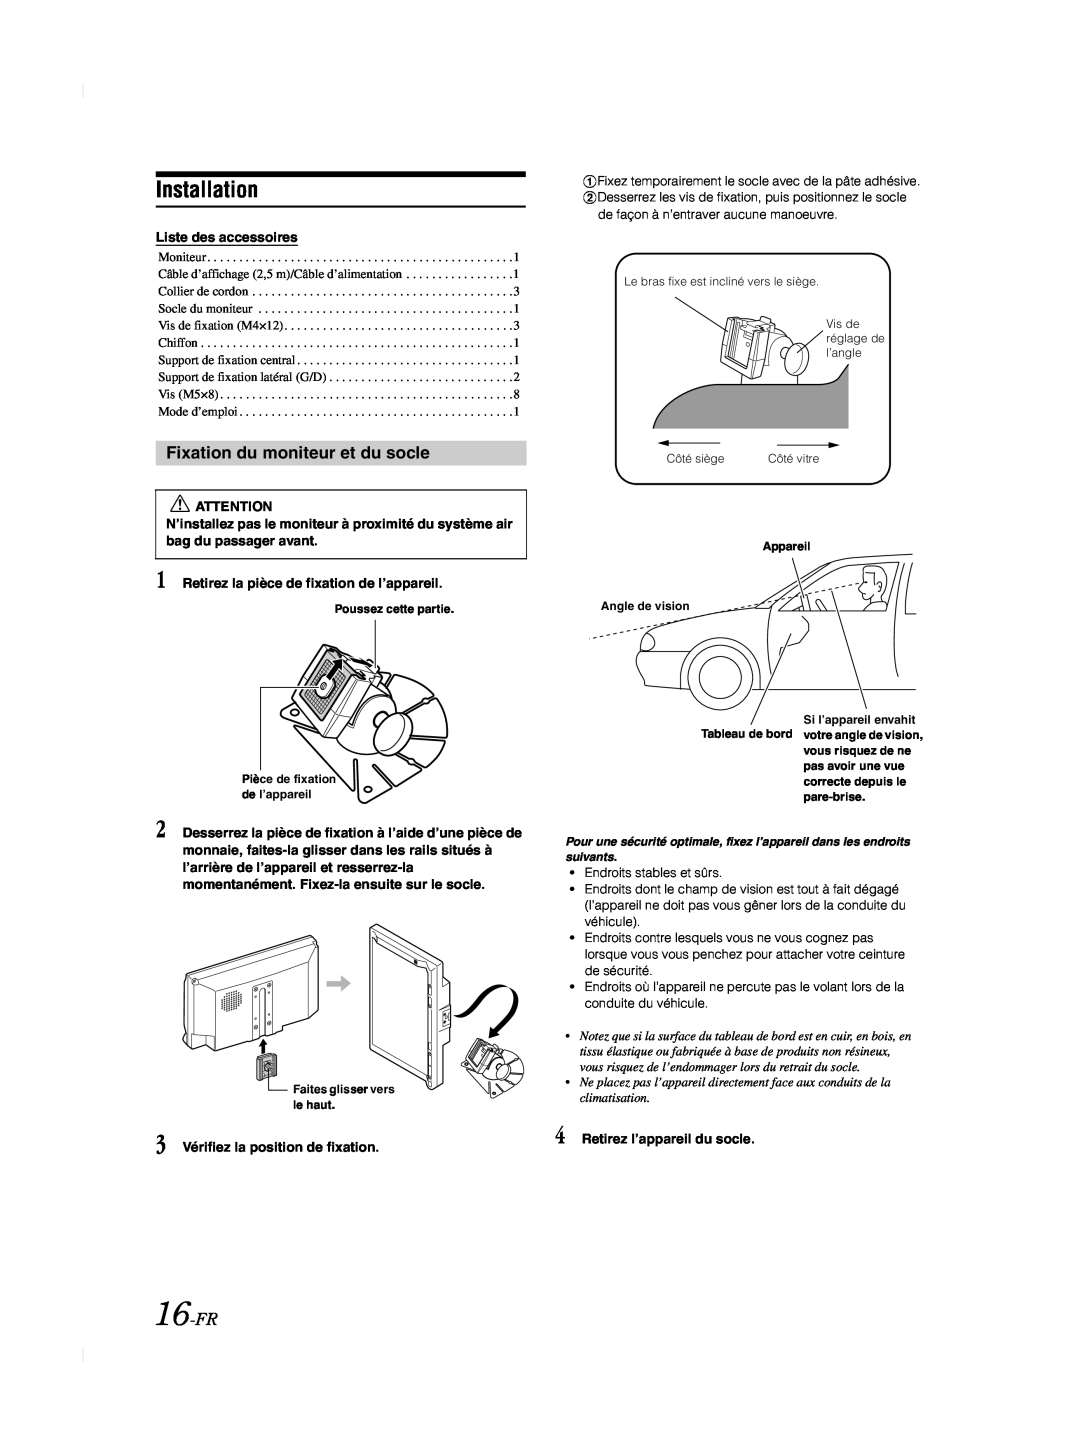 Alpine TME-M740BT owner manual Fixation du moniteur et du socle, 16-FR, Installation, Liste des accessoires 